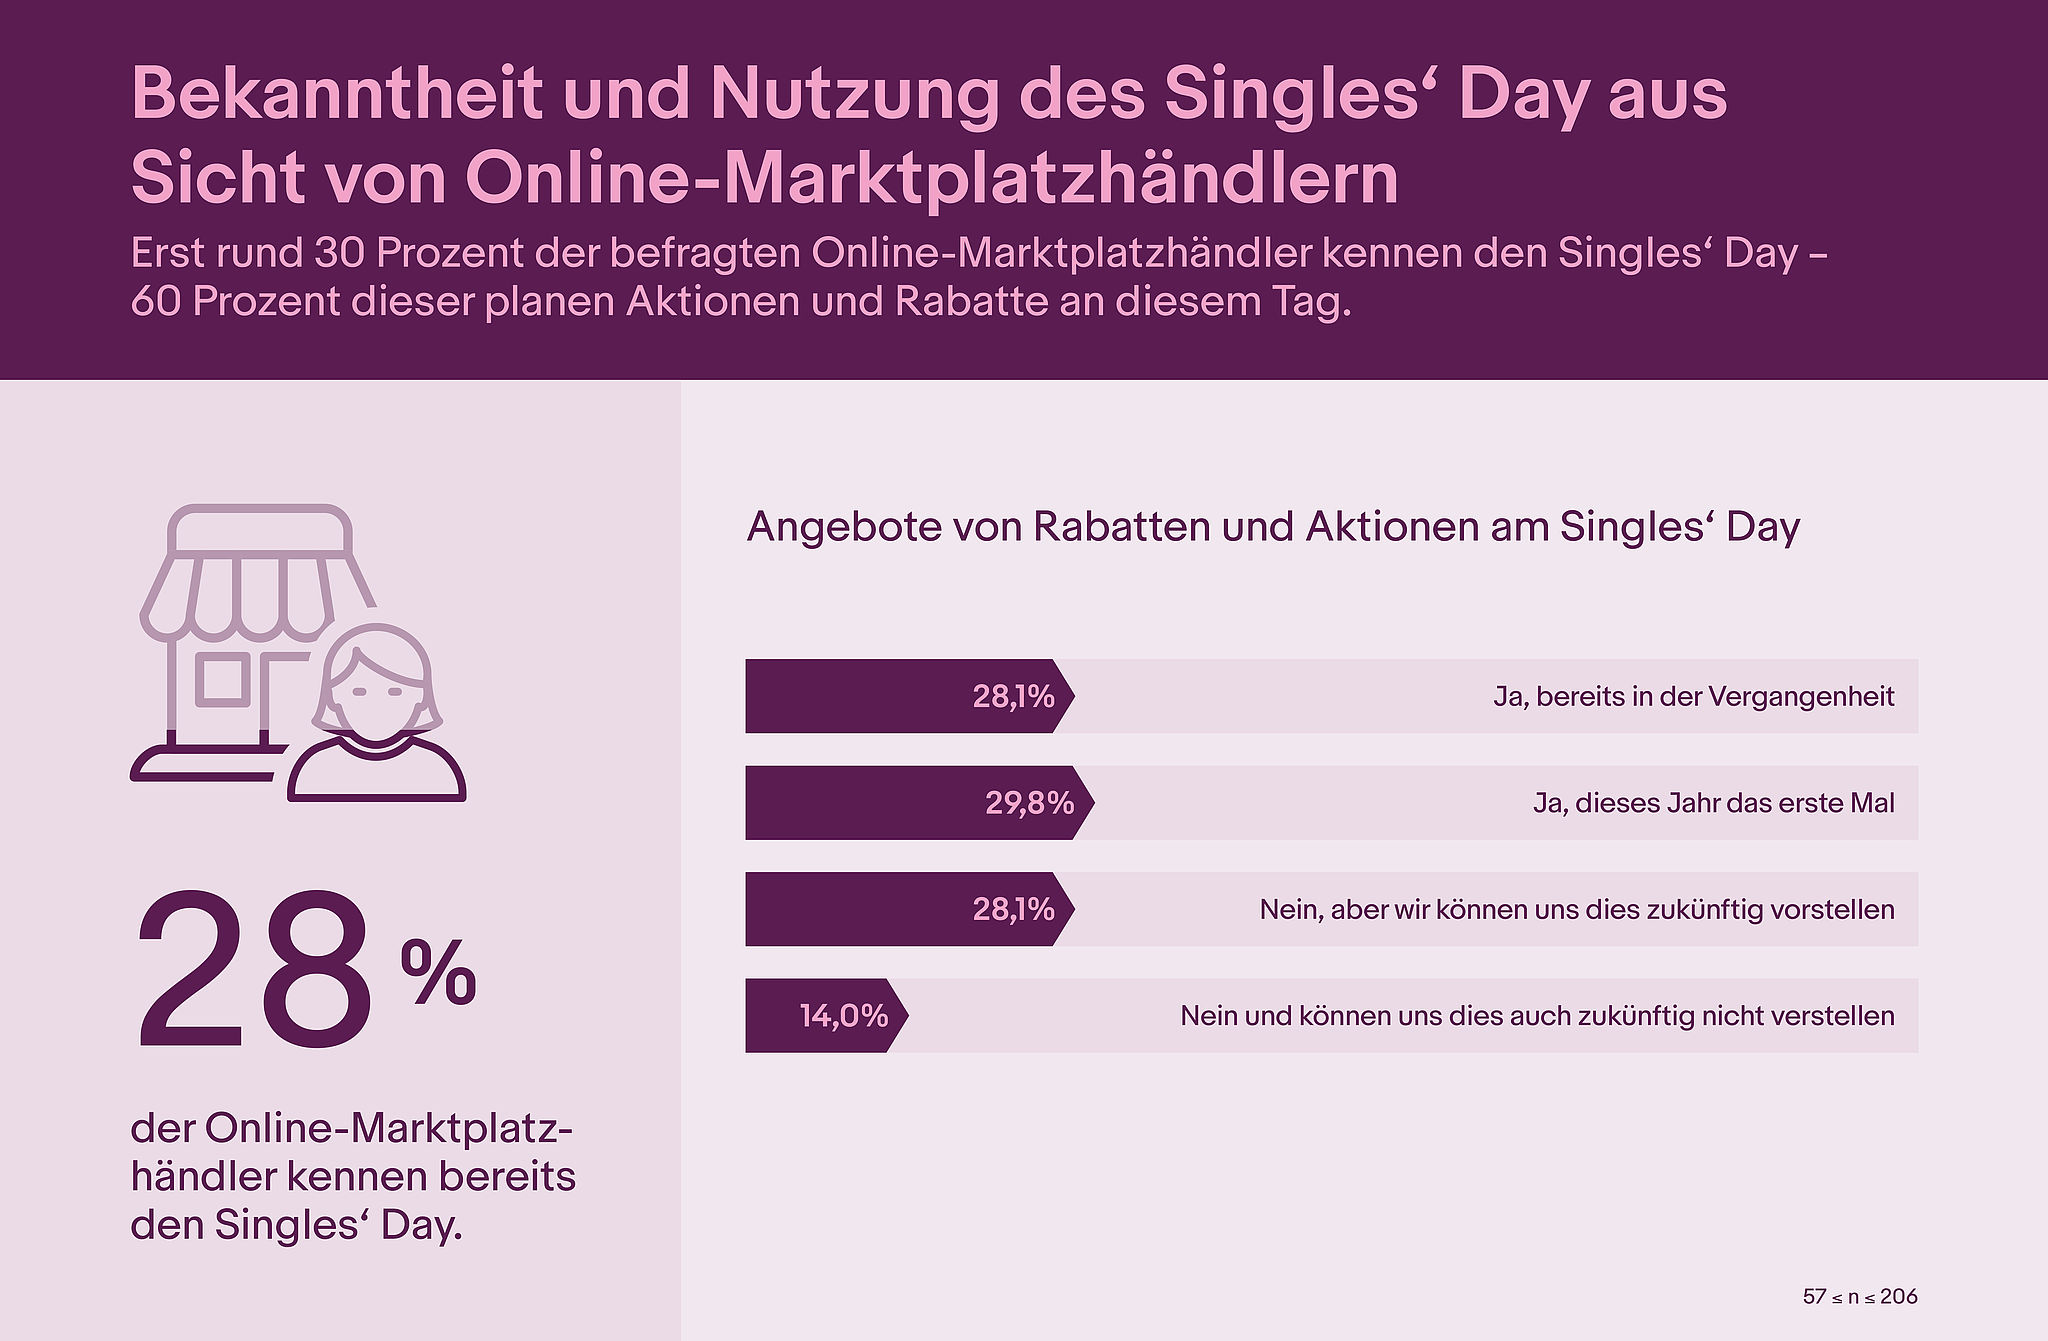 Bekanntheit uns Nutzung des Singles' Day aus Sicht von Onlinemarktplatzhändlern